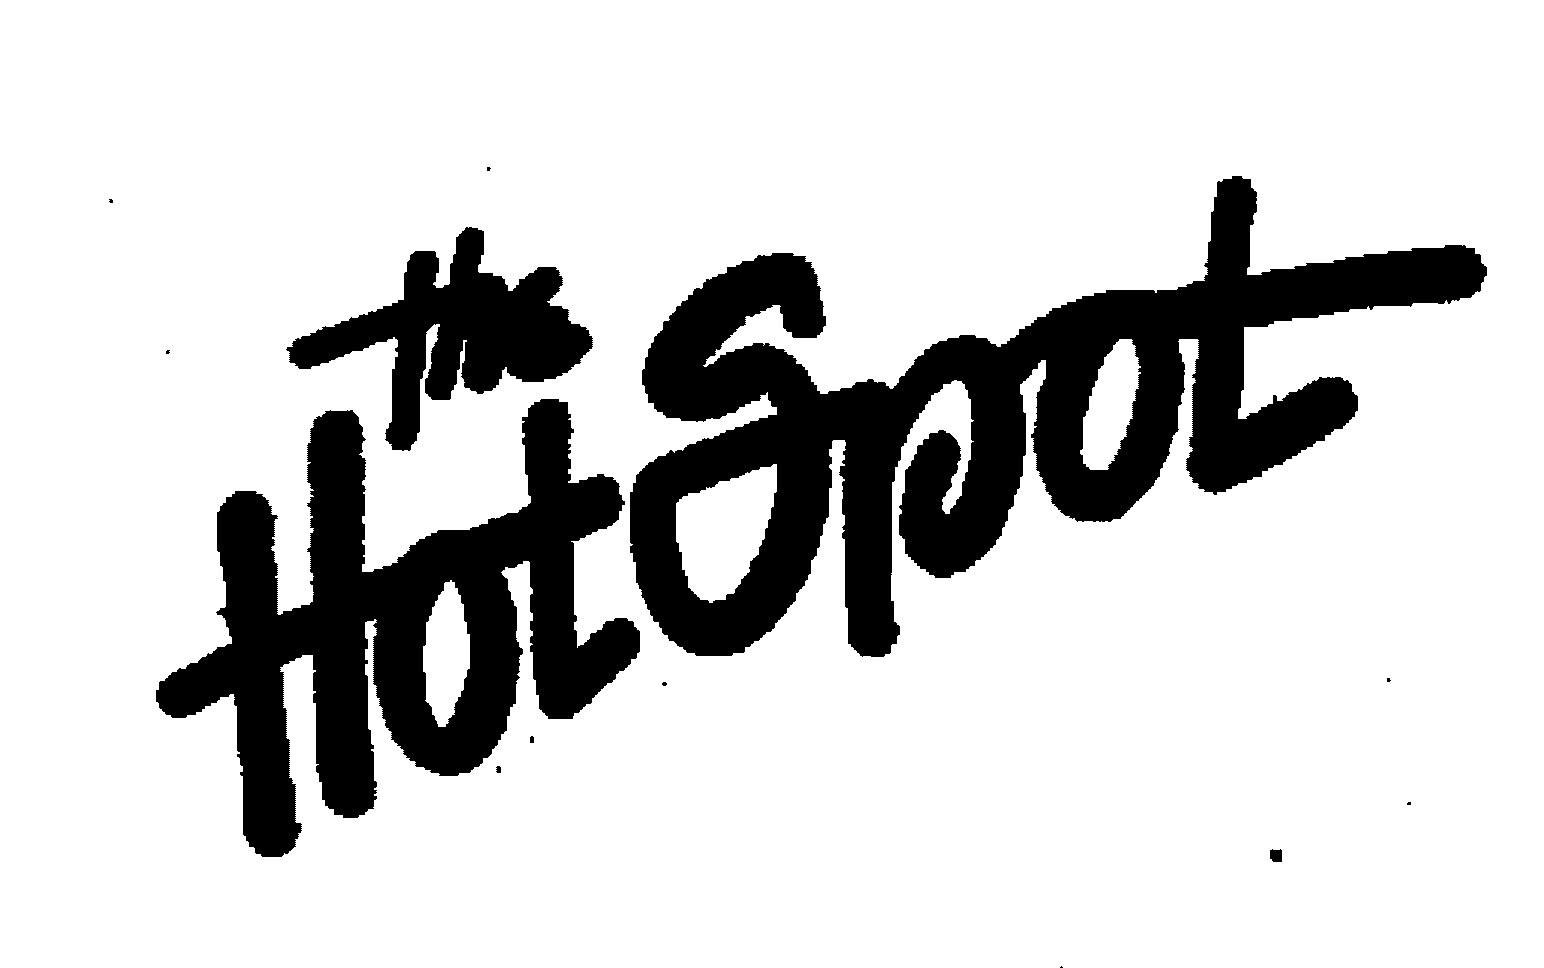 THE HOT SPOT